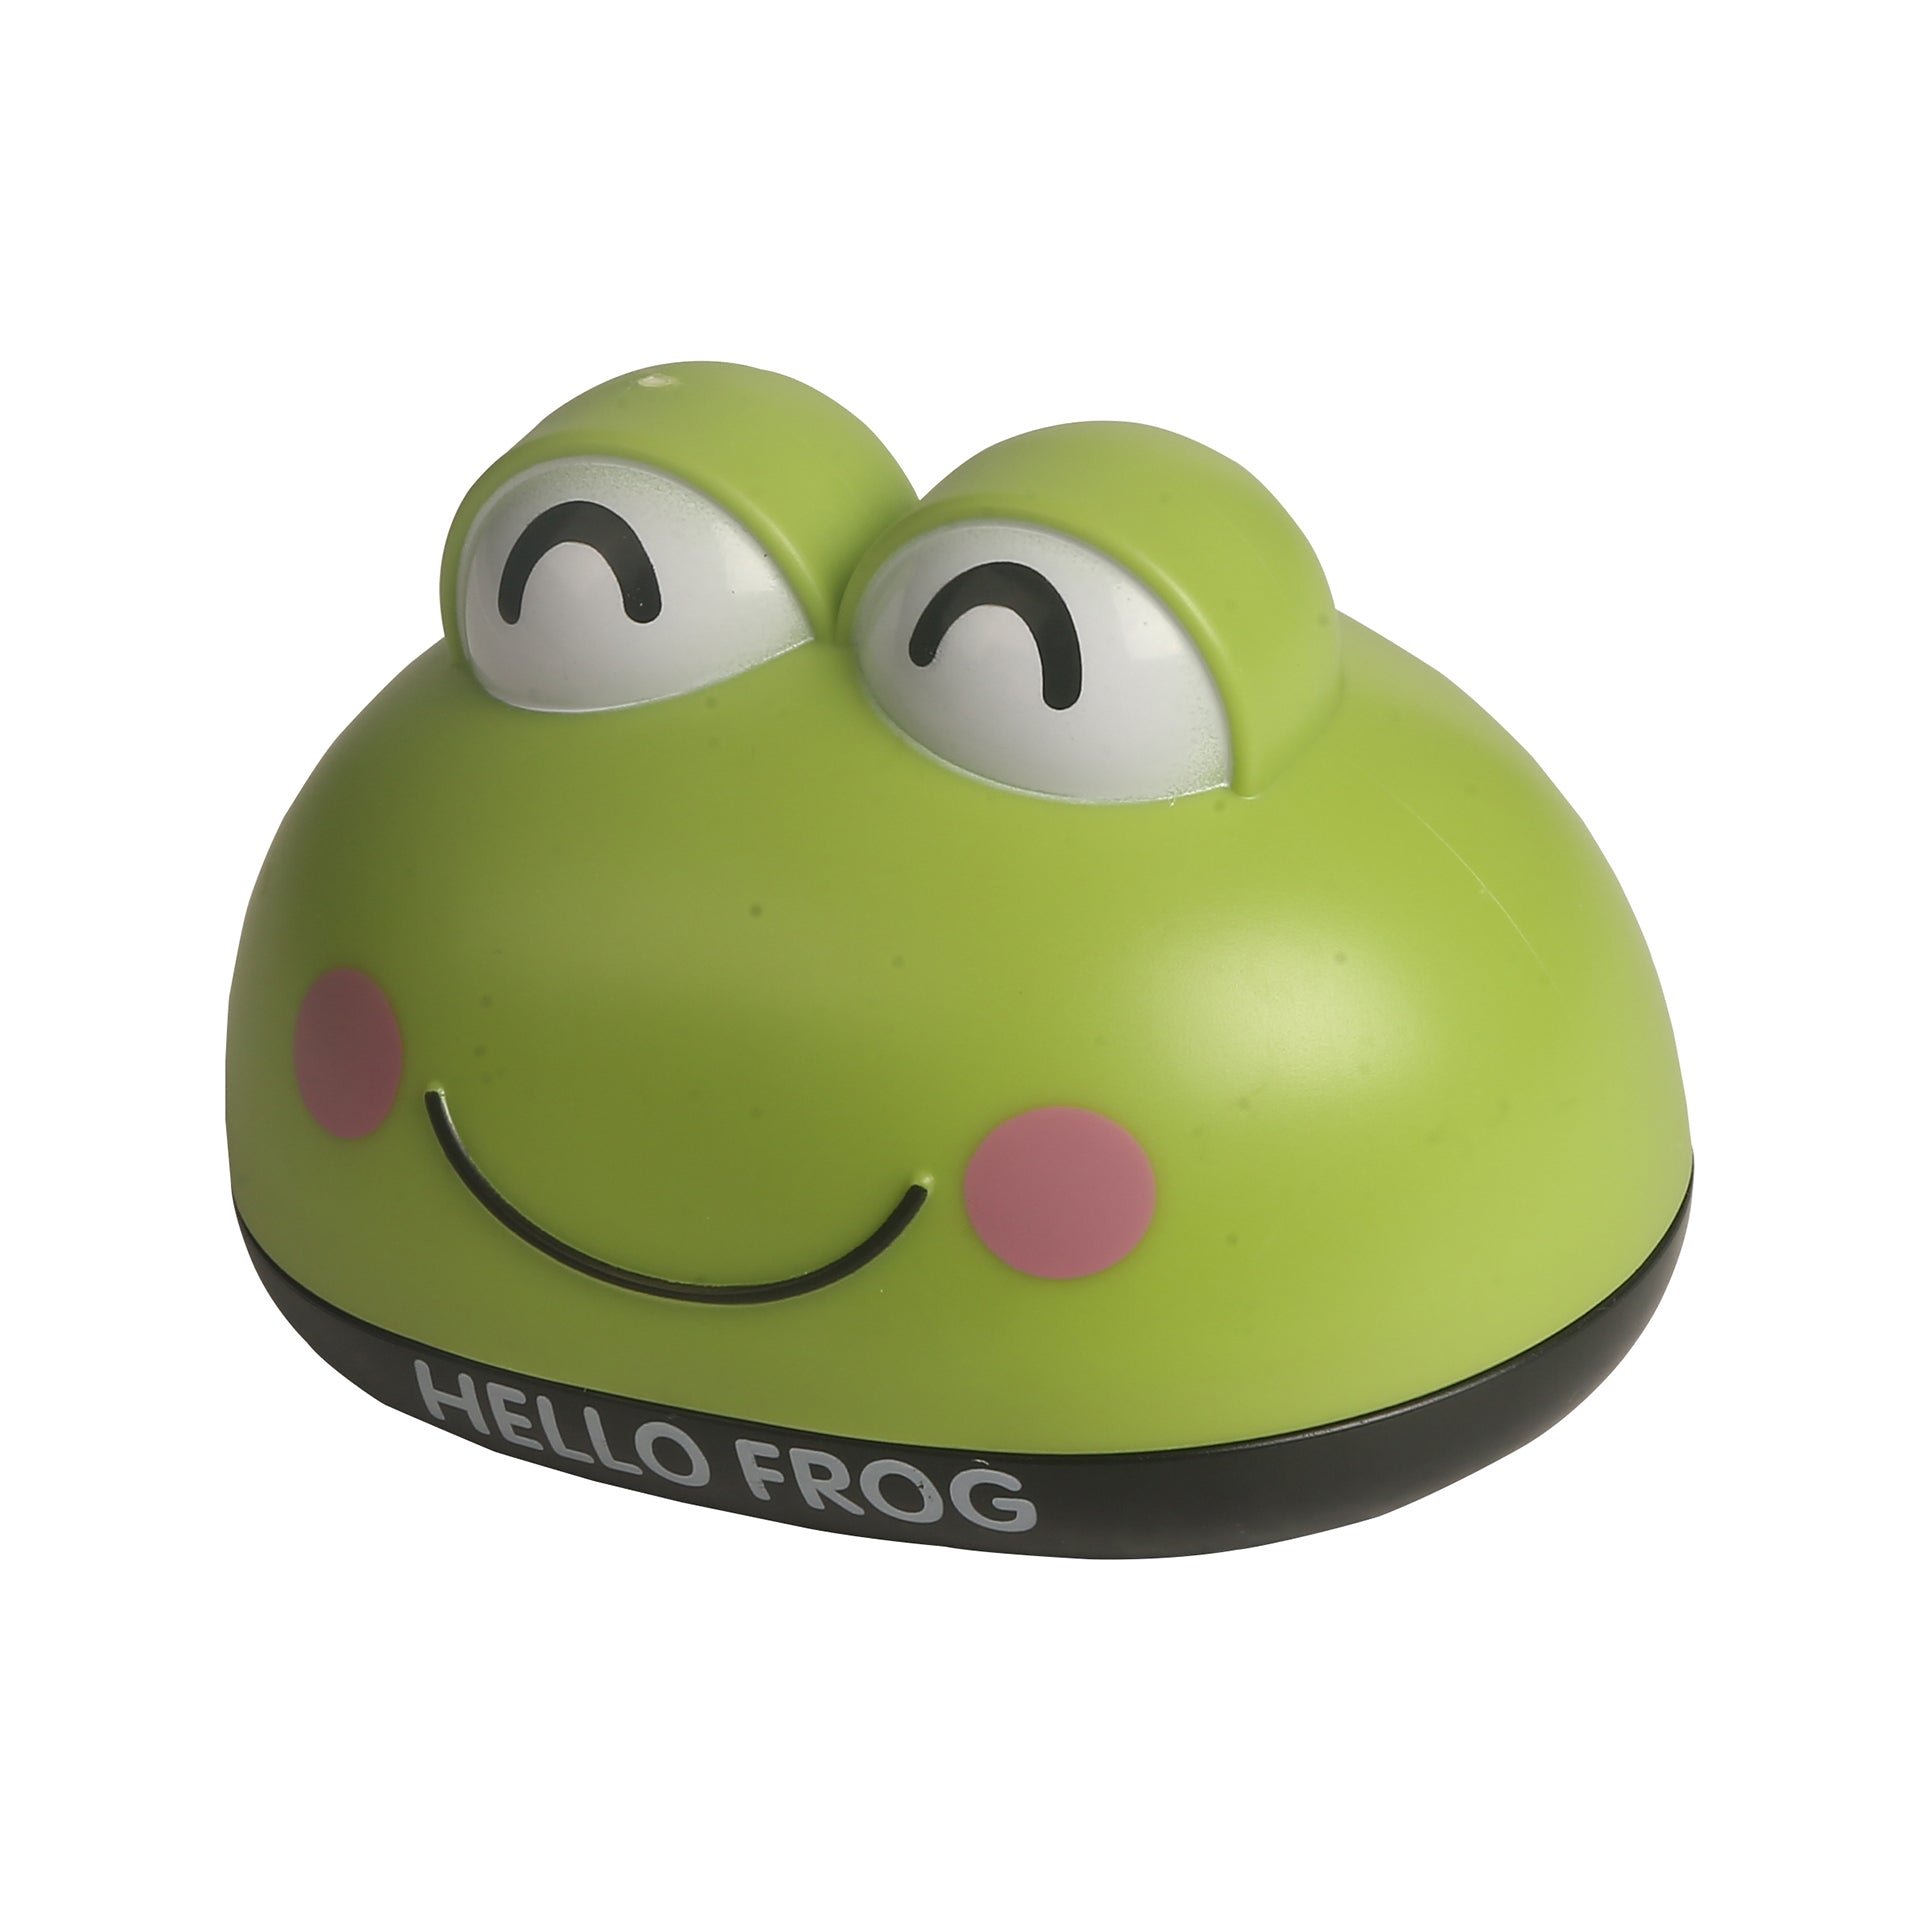 Frog Green Soap Box - Baby Moo